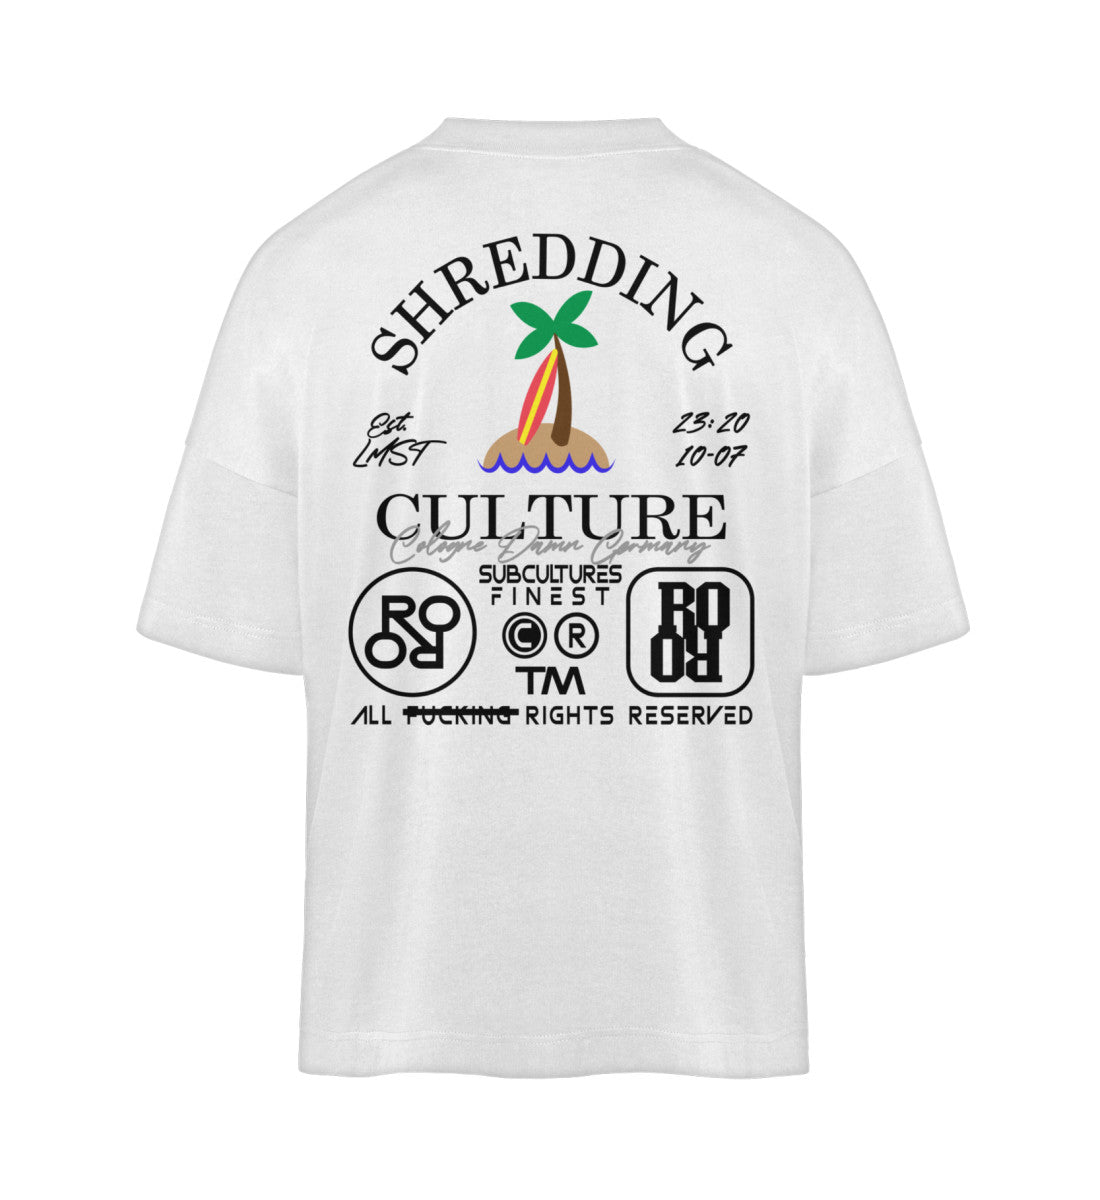 Weißes T-Shirt Unisex Oversize Fit für Frauen und Männer bedruckt mit dem Design der Roger Rockawoo Kollektion Surf shredding culture